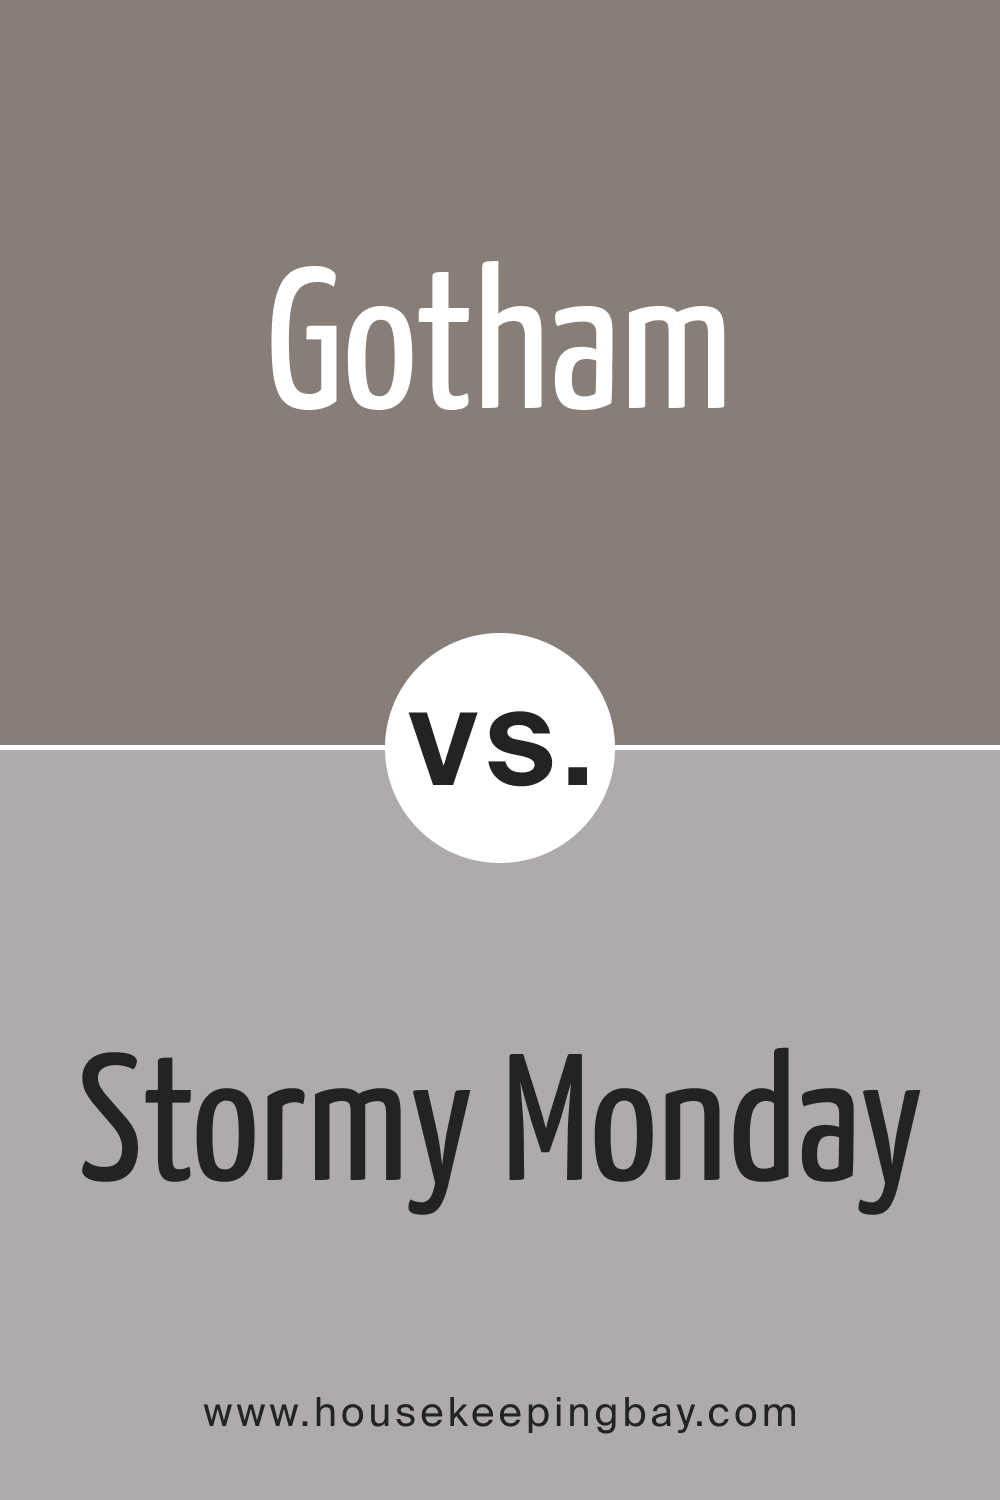 Gotham CSP-385 vs. BM 2112-50 Stormy Monday